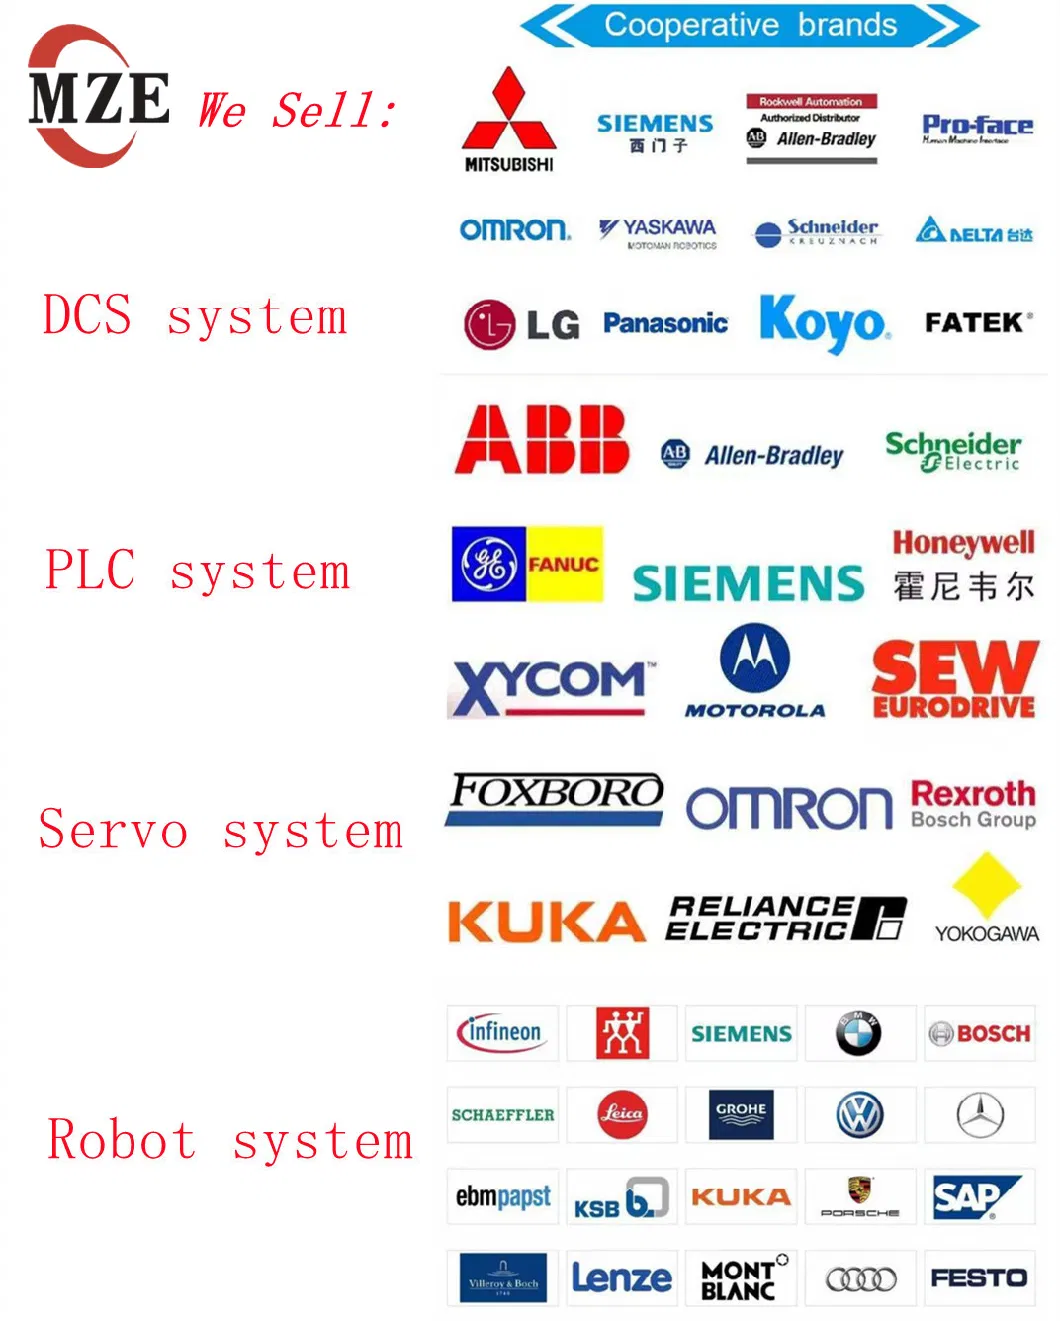 Siemens Servo Motor System /Plcs7-200/S7-300/S7-1500/S7-1200/S7-200smart/S7-400 /Siemens Inverter mm420, mm430, mm440, V80, V60, V70, V20, V90, G120, S120, G150